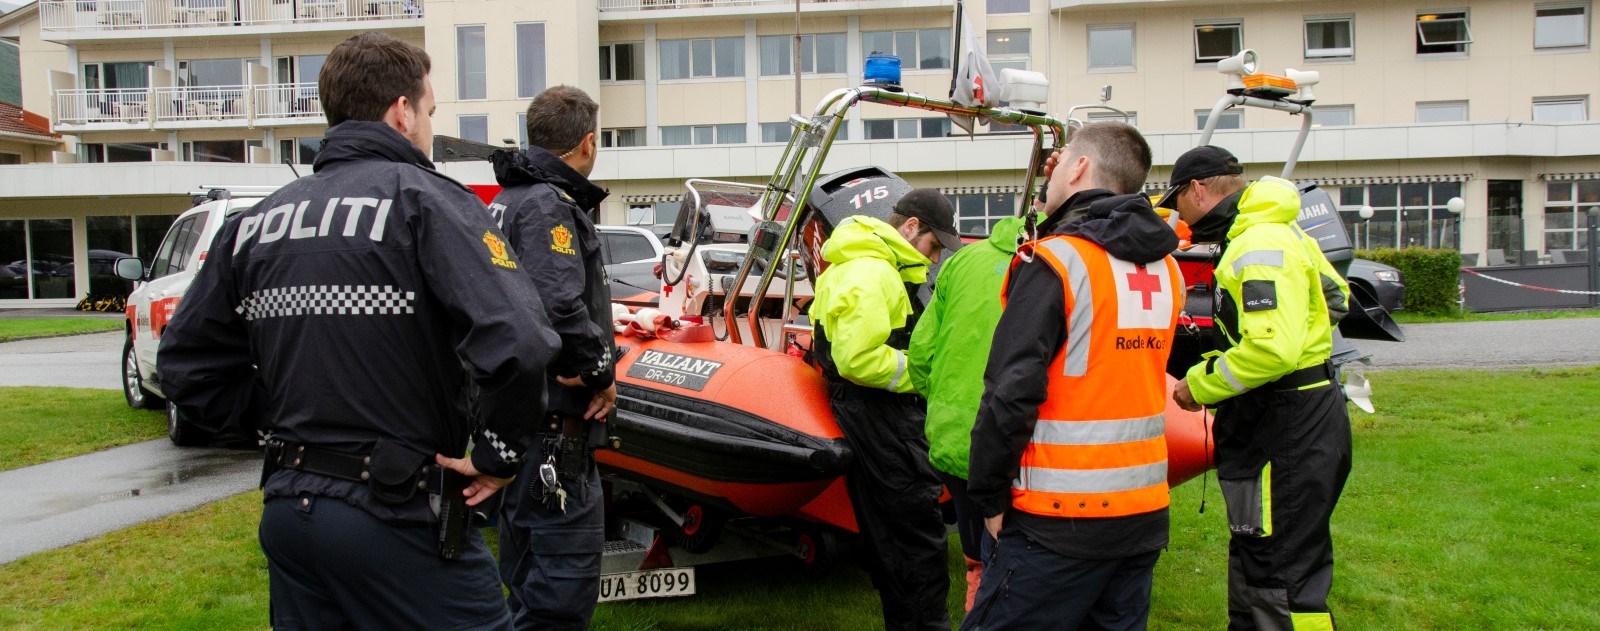 Stryn og Eid Røde Kors Hjelpekorps gjer klar båten medan dei får overlevert oppdrag frå Politiet i samband med innsatsen i etterkant av jordrasa på Vassenden.